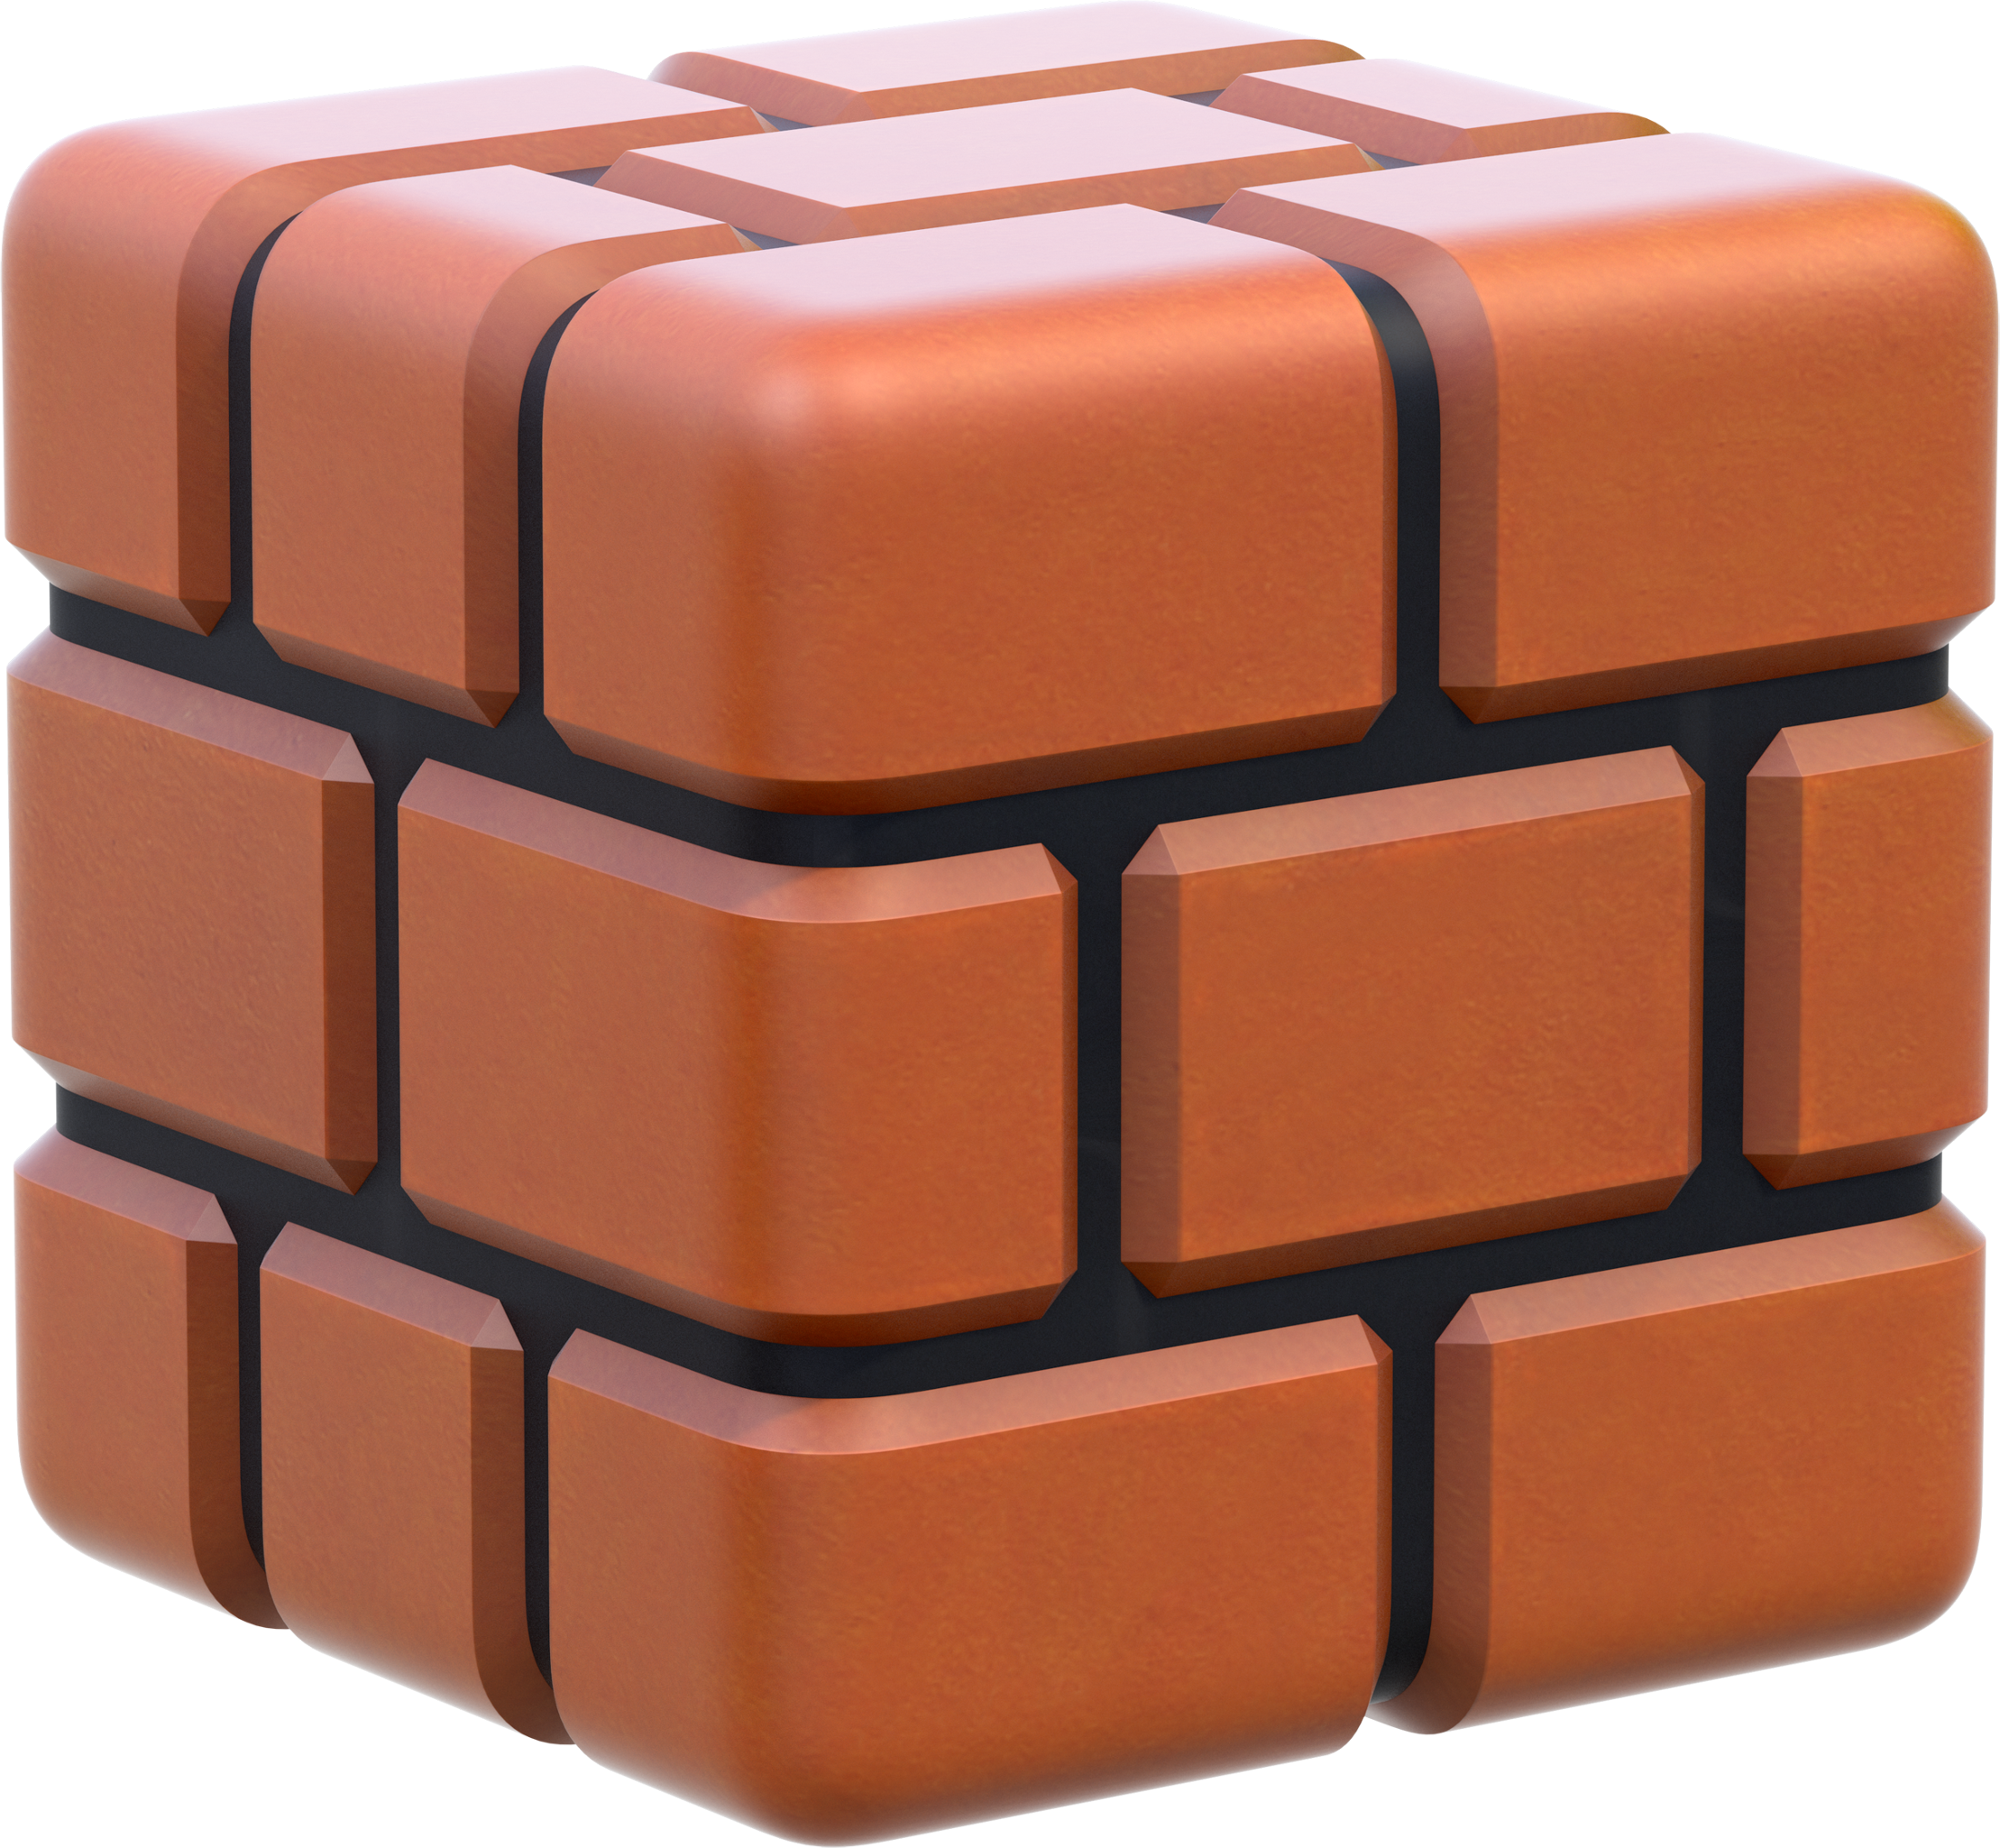 Brick Block Artwork - Super Mario 3d World Block (2200x2033), Png Download